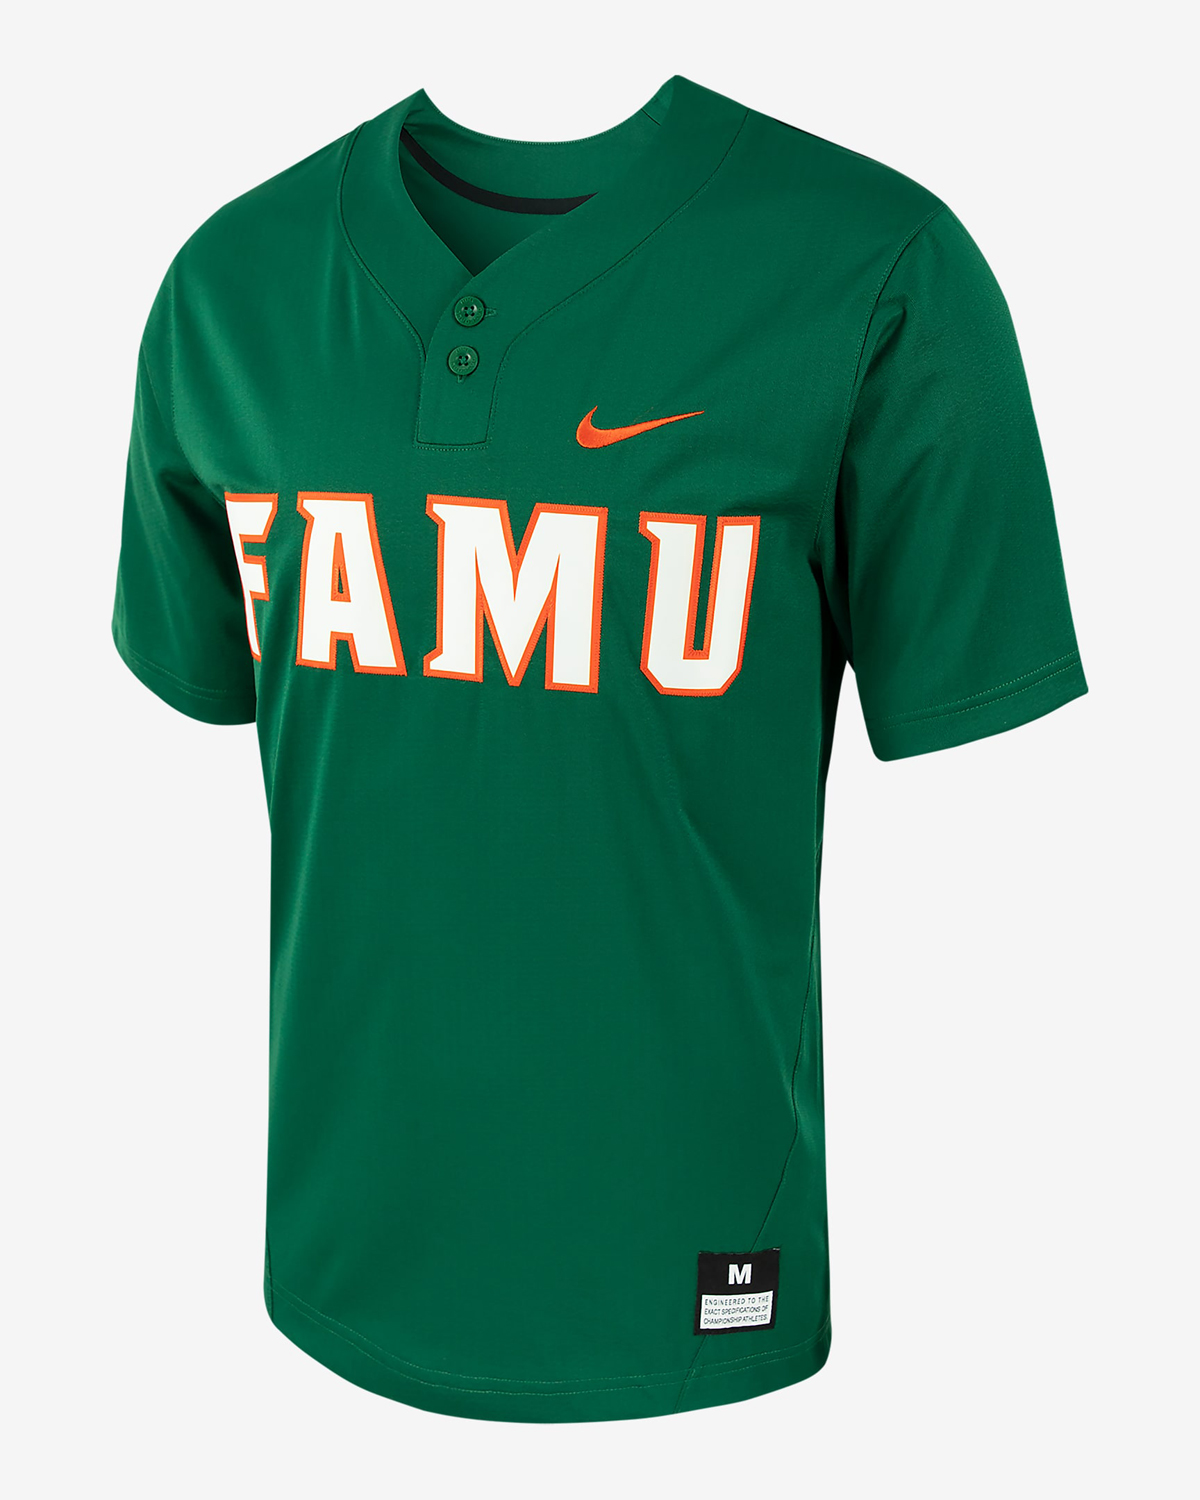 Nike-FAMU-Florida-AM-baseball-Jersey-Shirt